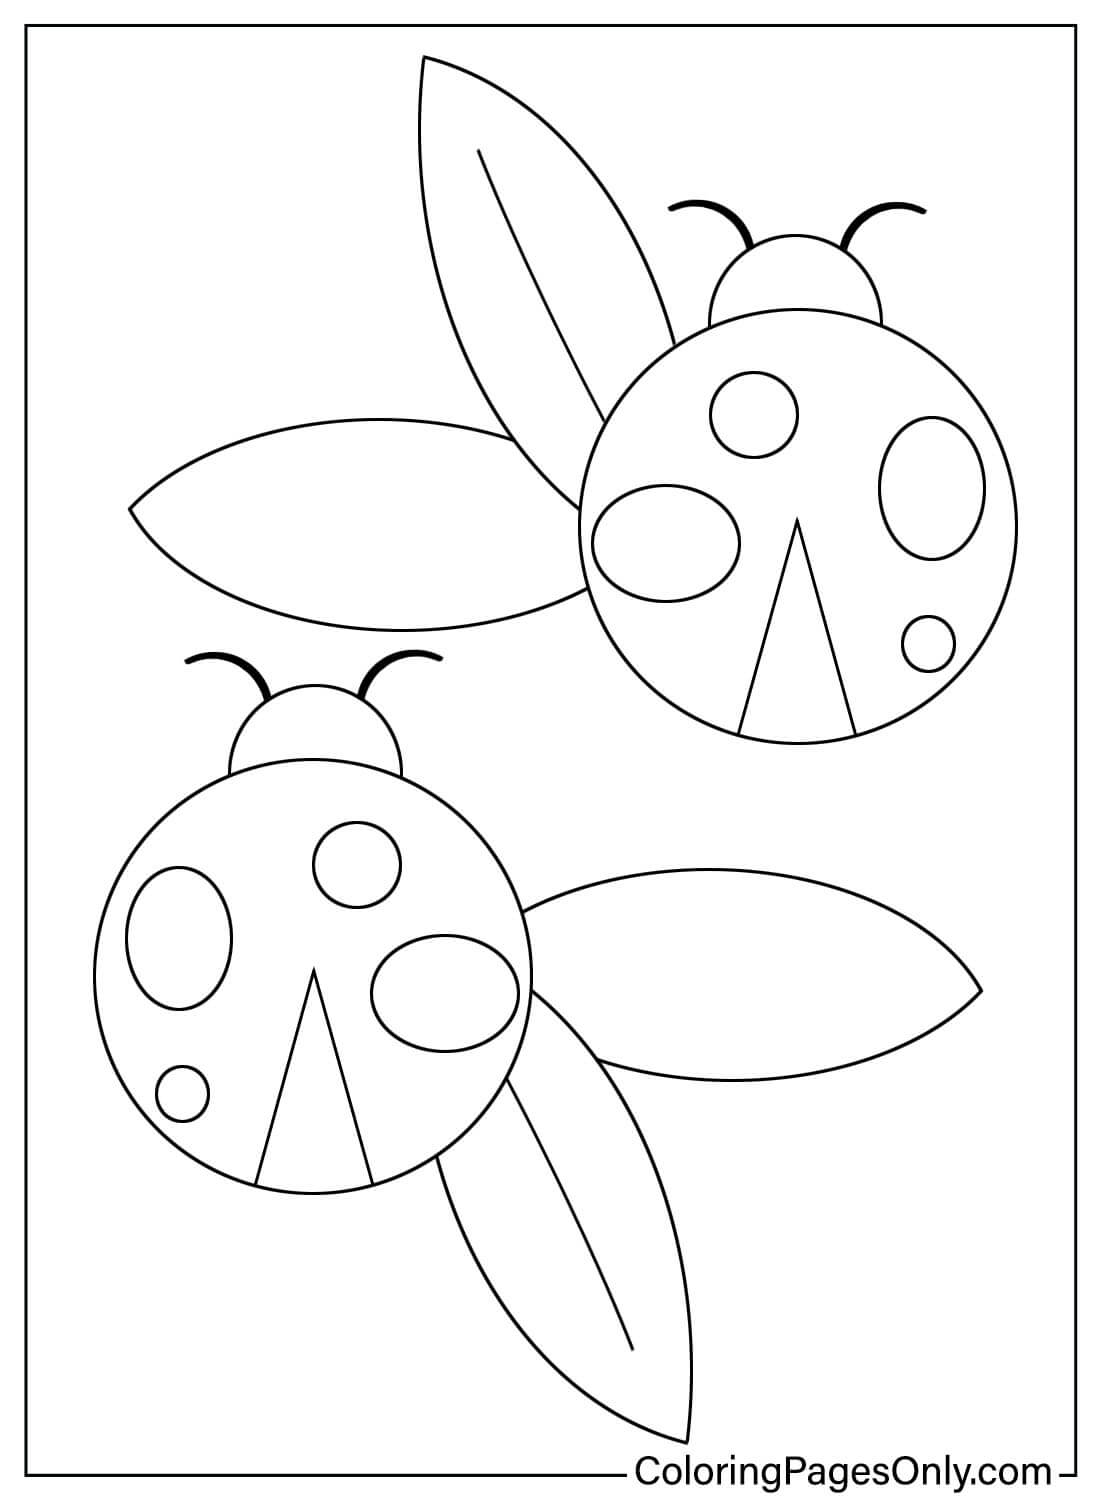 Página para colorear de pegatinas de Mariquita de Ladybug